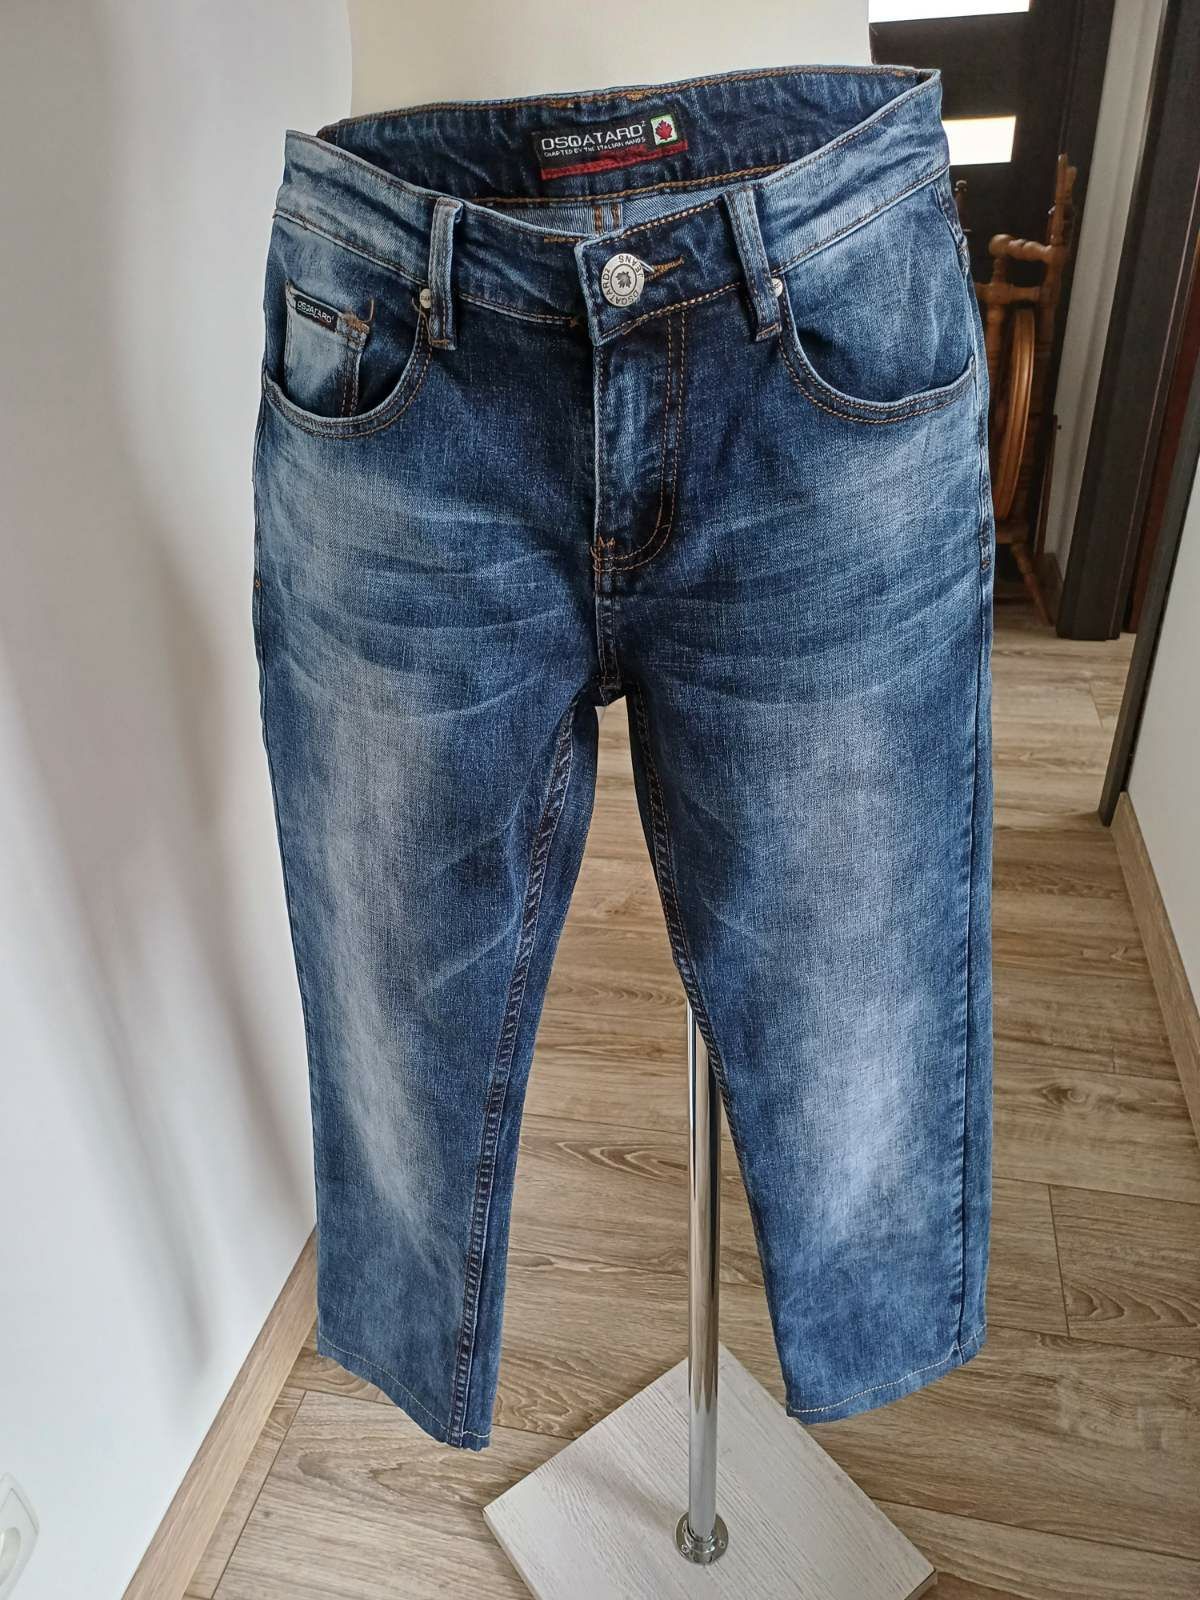 Spodnie unisex niebieski jeans Dsqatard 2 rozm L.